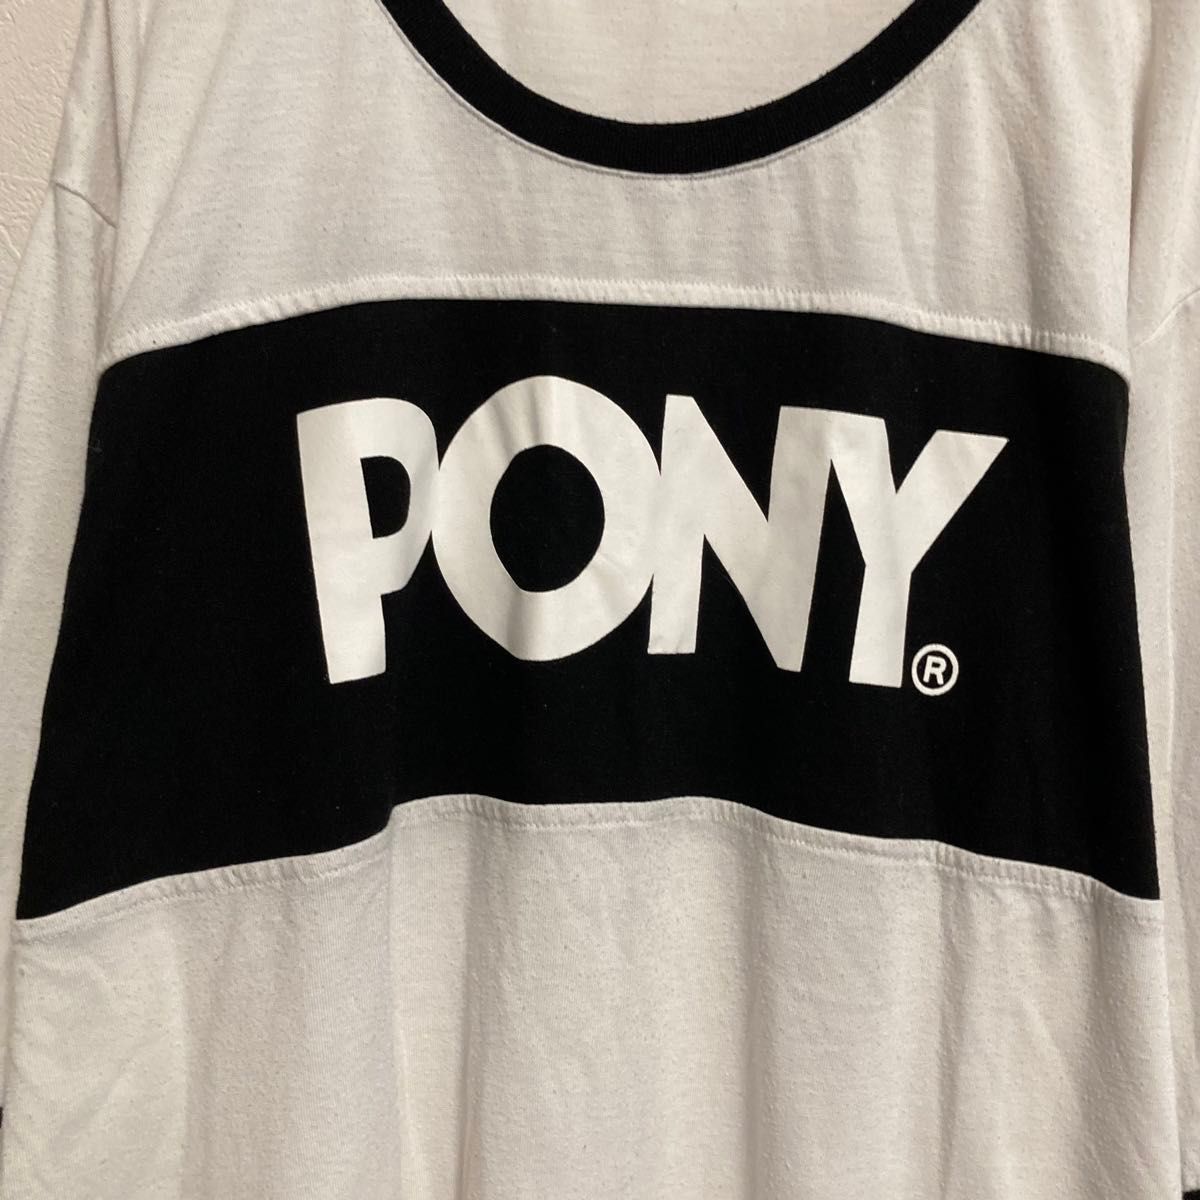 PONY  ポニー Tシャツ 半袖 3L レディース